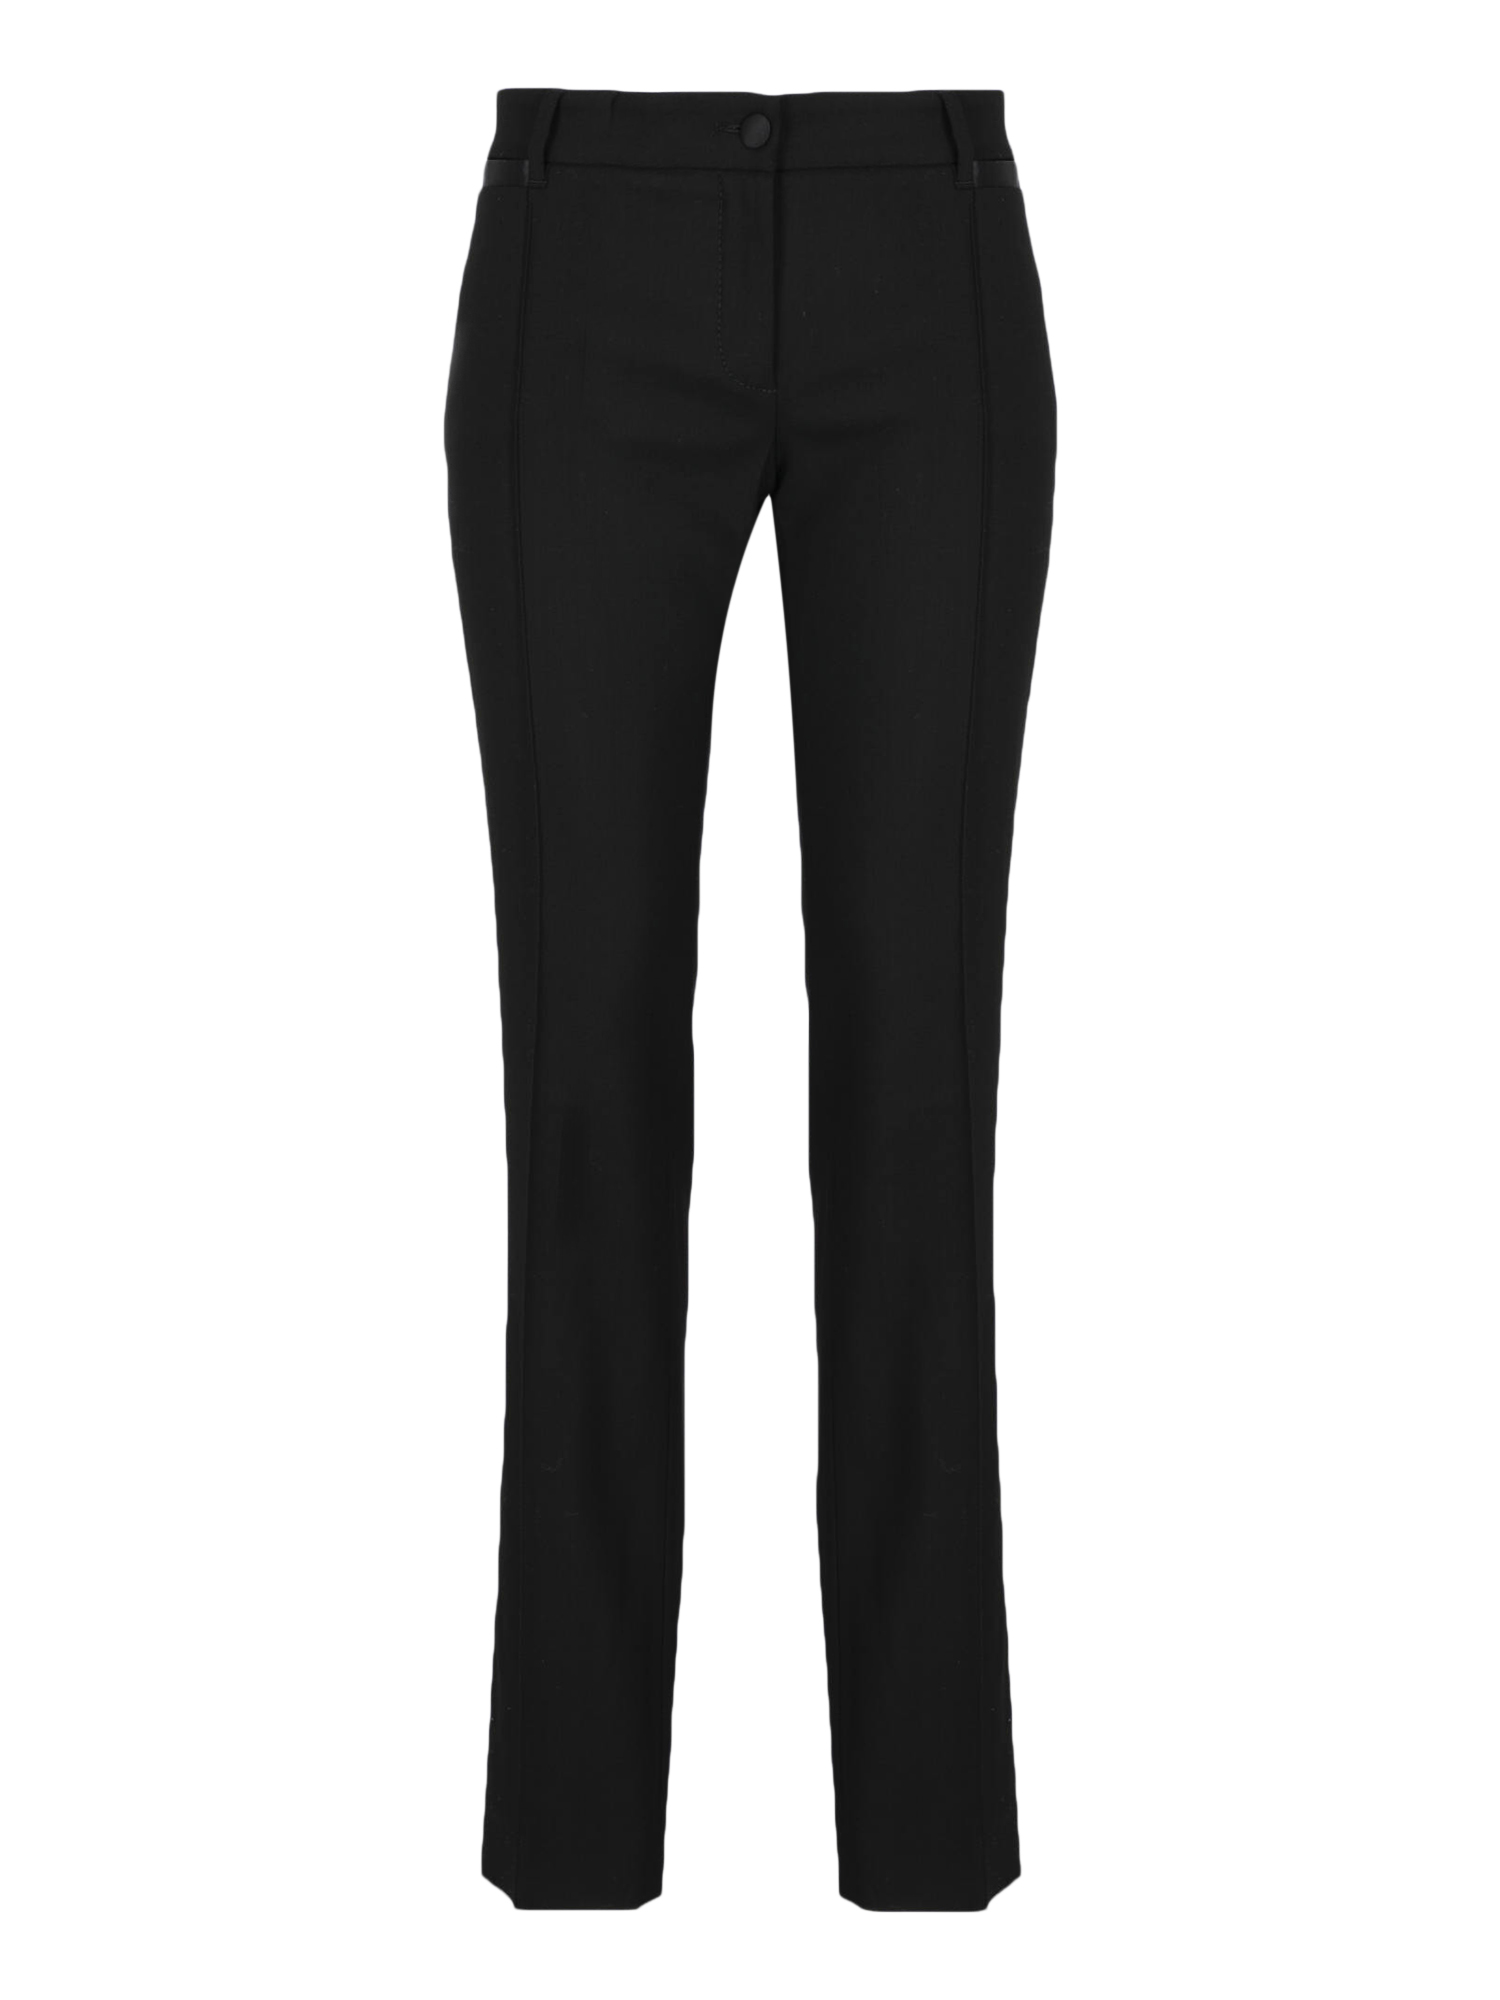 Pre-owned Dolce & Gabbana Women's Trousers -  - In Black Wool